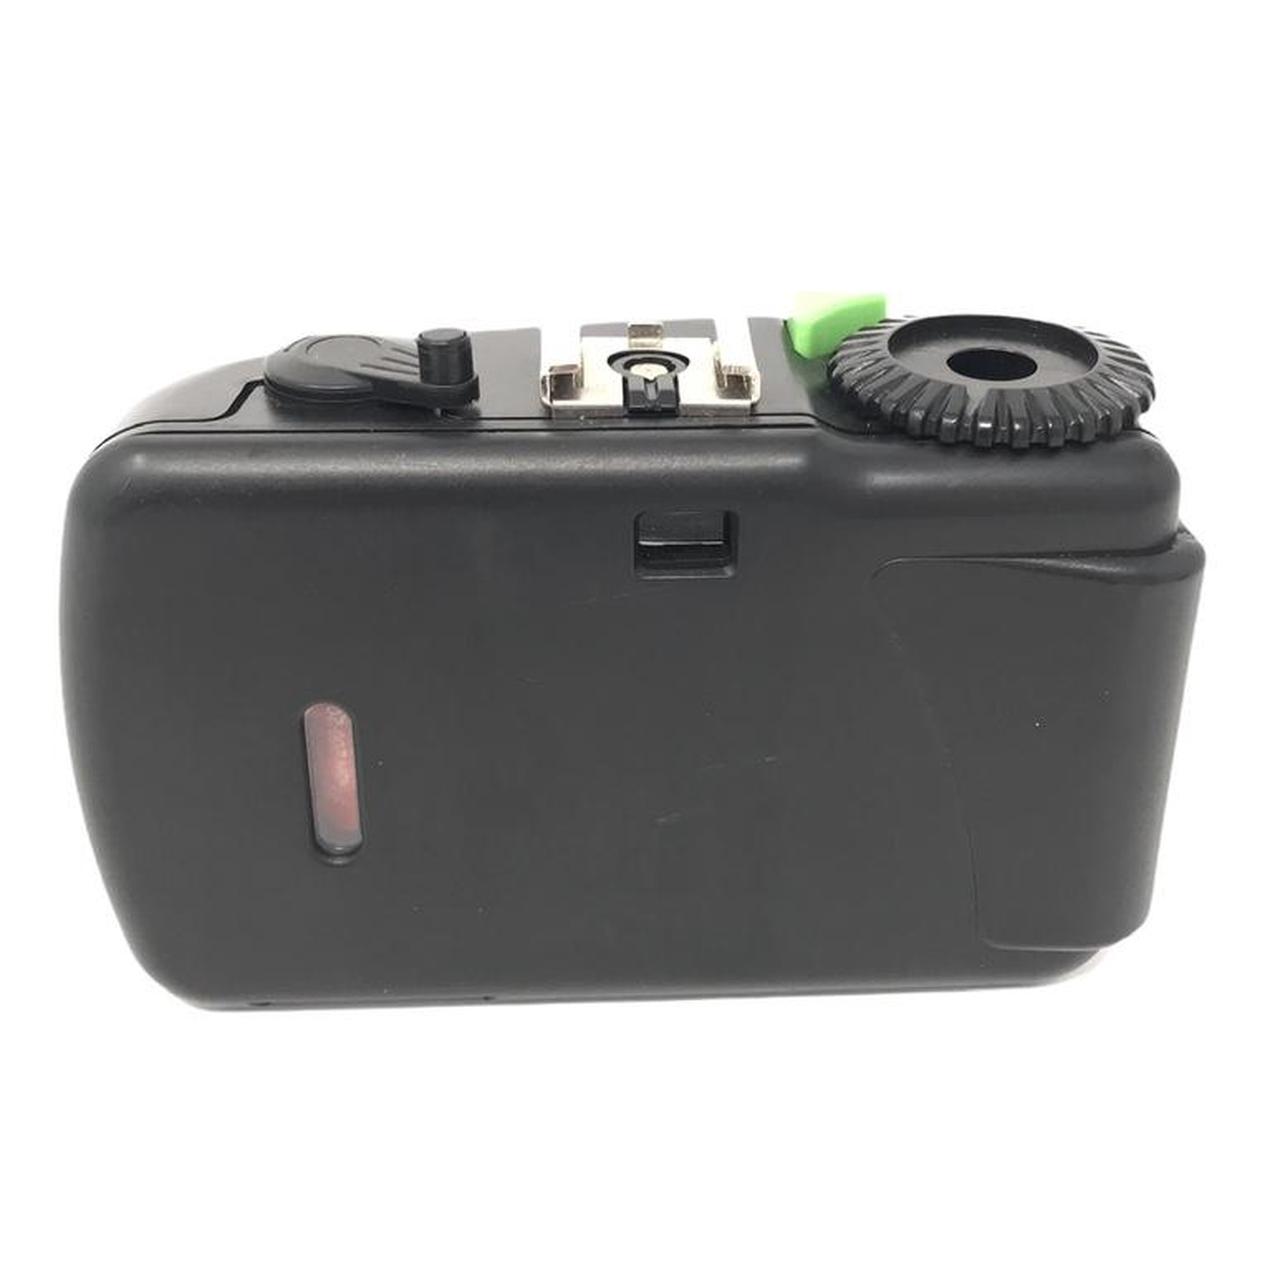 Vivitar Cameras-and-accessories (3)